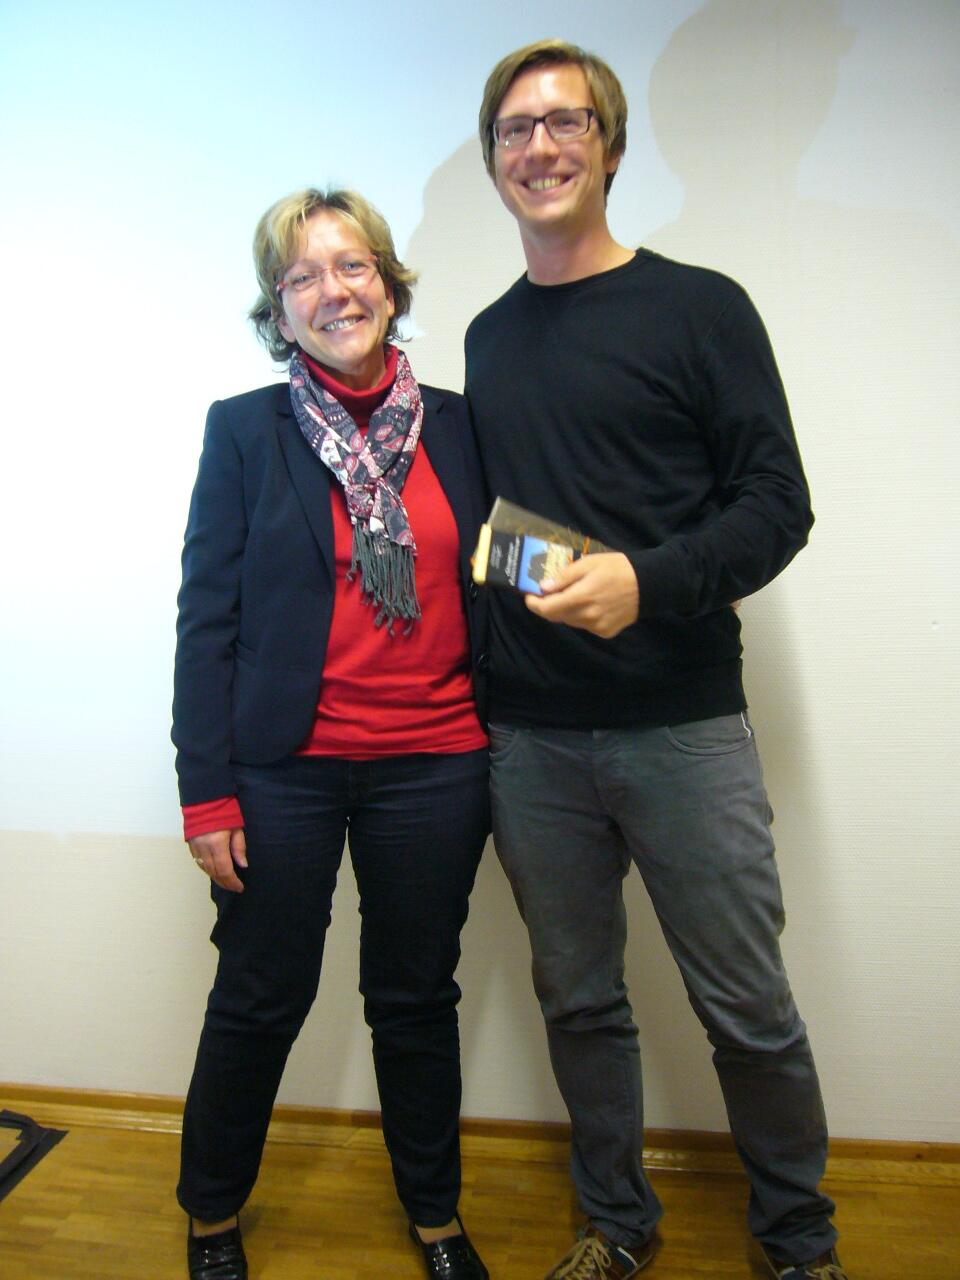 Verabschiedung von Niels Ohlsen auf dem Kommunikatorentreffen am 24.10.2014 in Kassel durch Dr. Hedda Schlegel-Starmann 